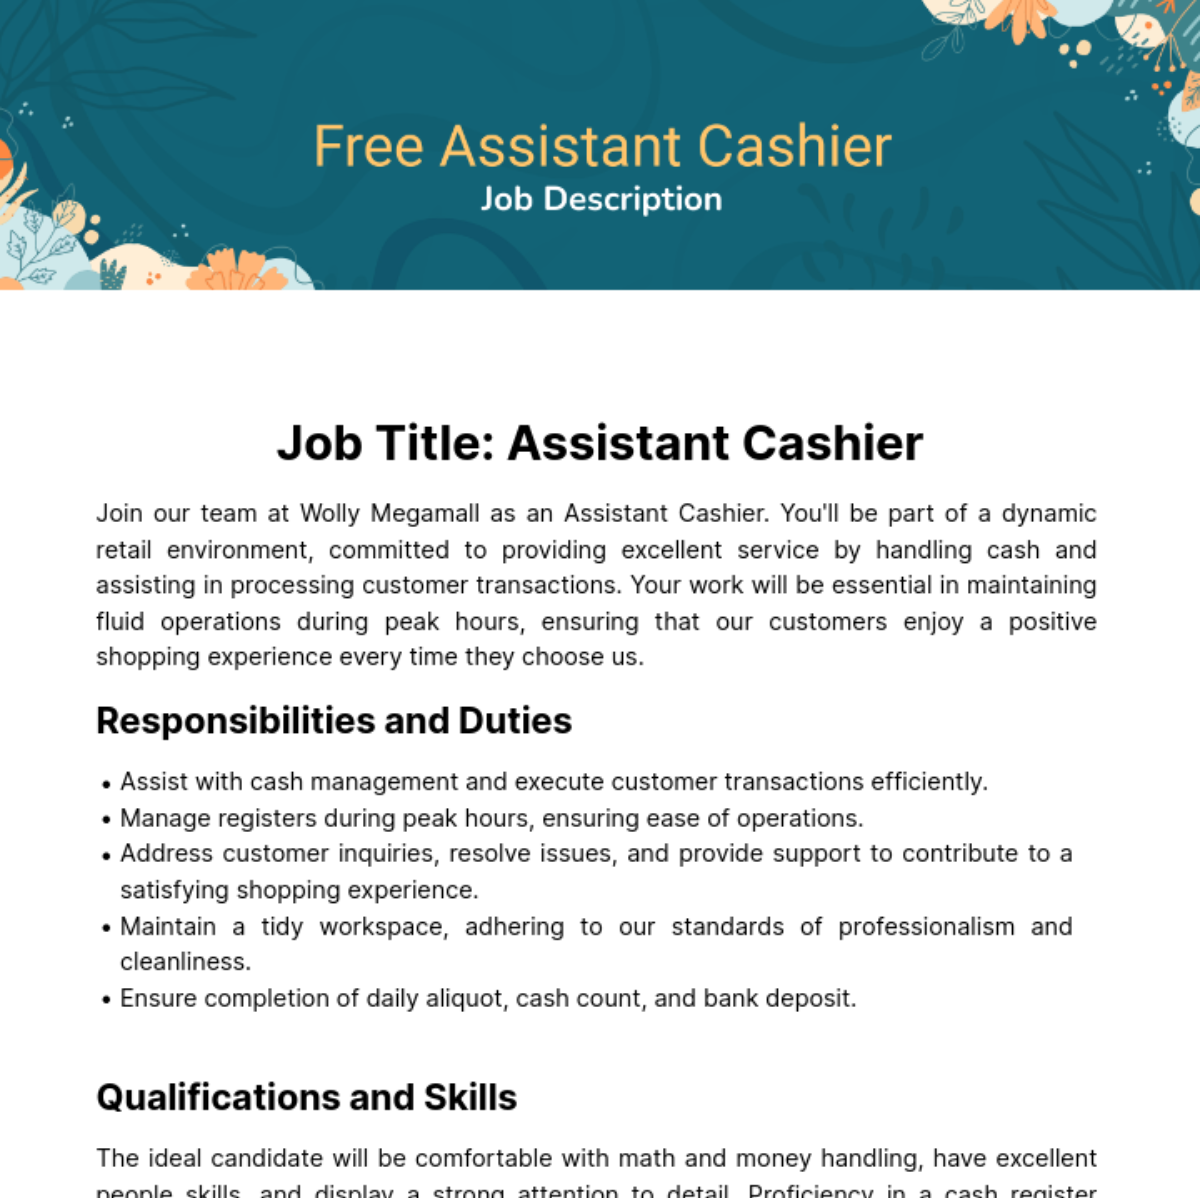 Free Assistant Cashier Job Description Template